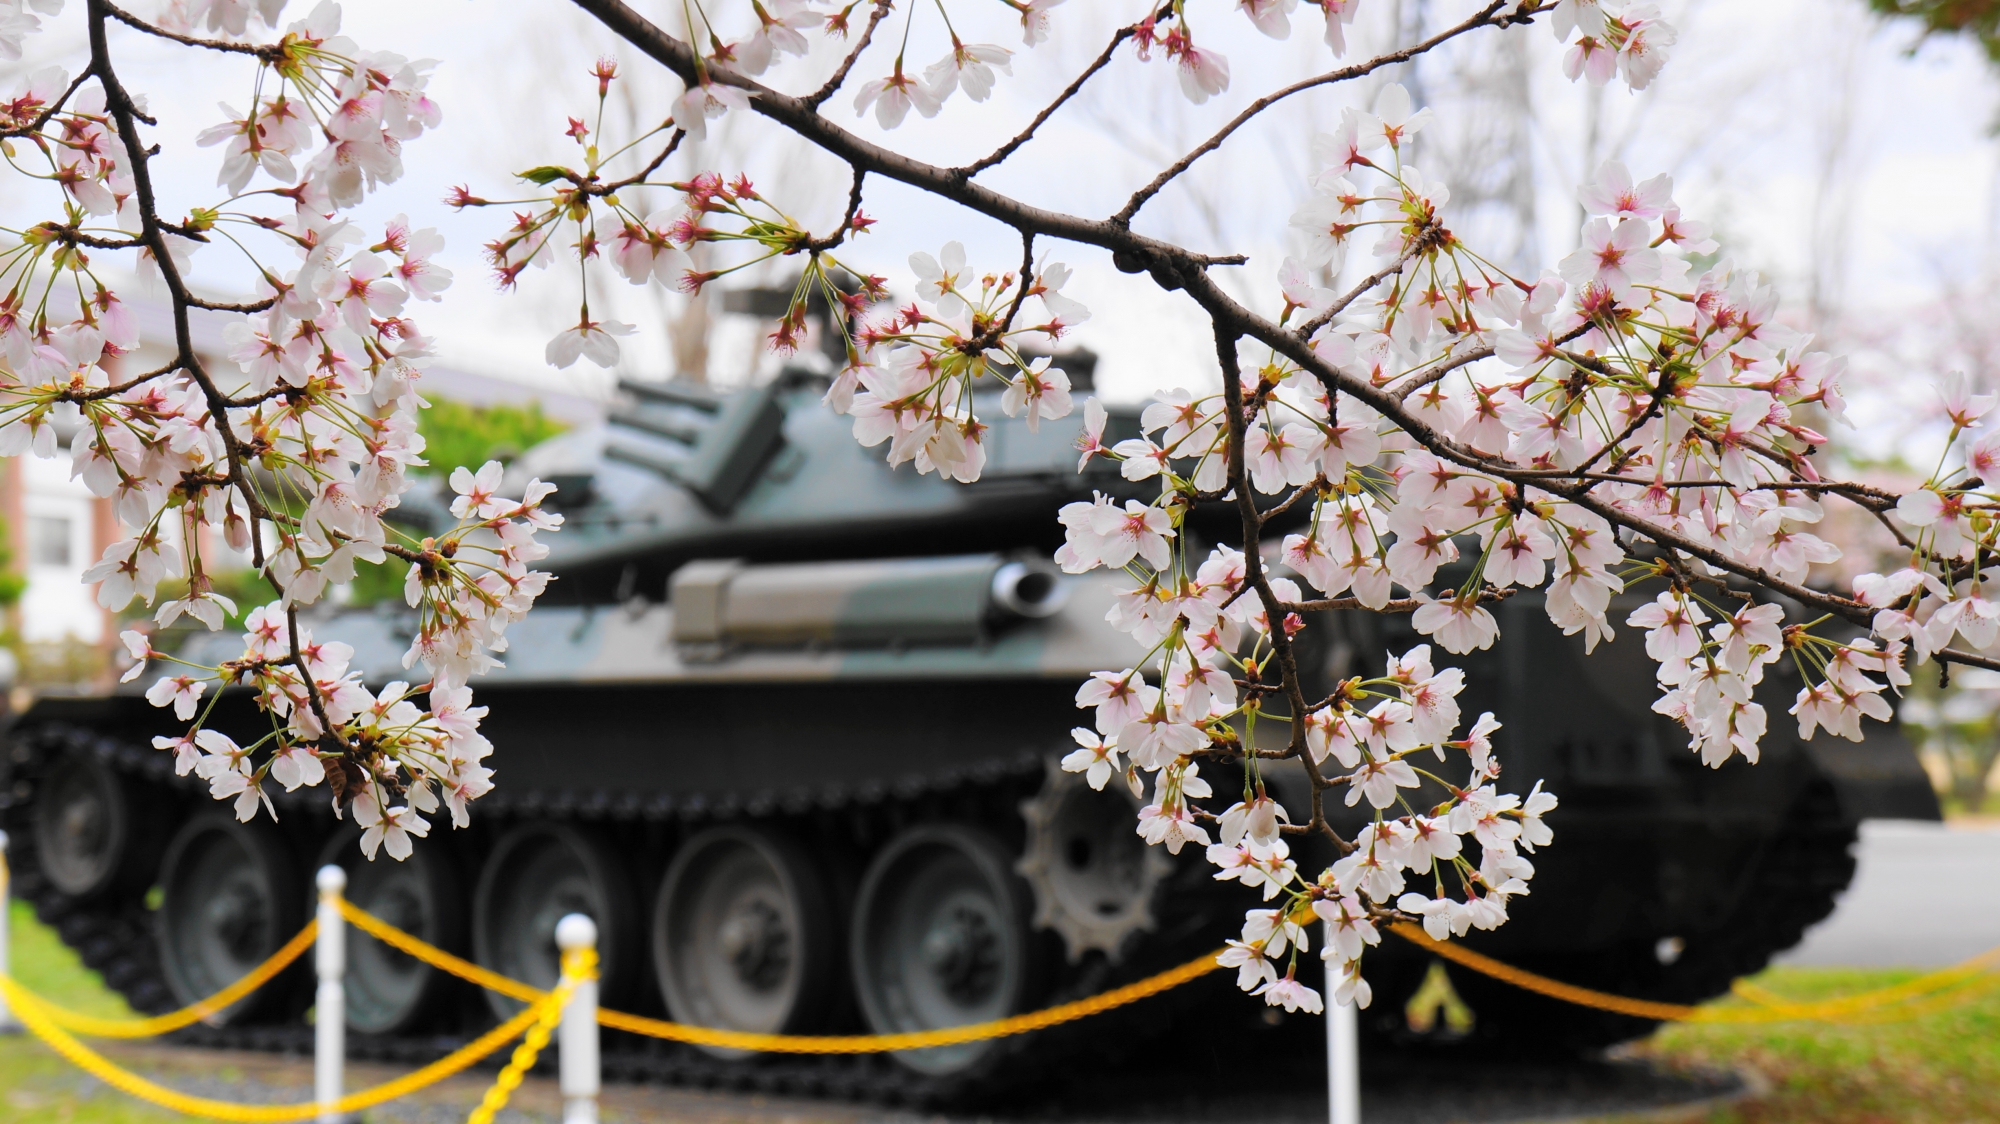 戦車の後ろで長閑に咲く可愛い桜